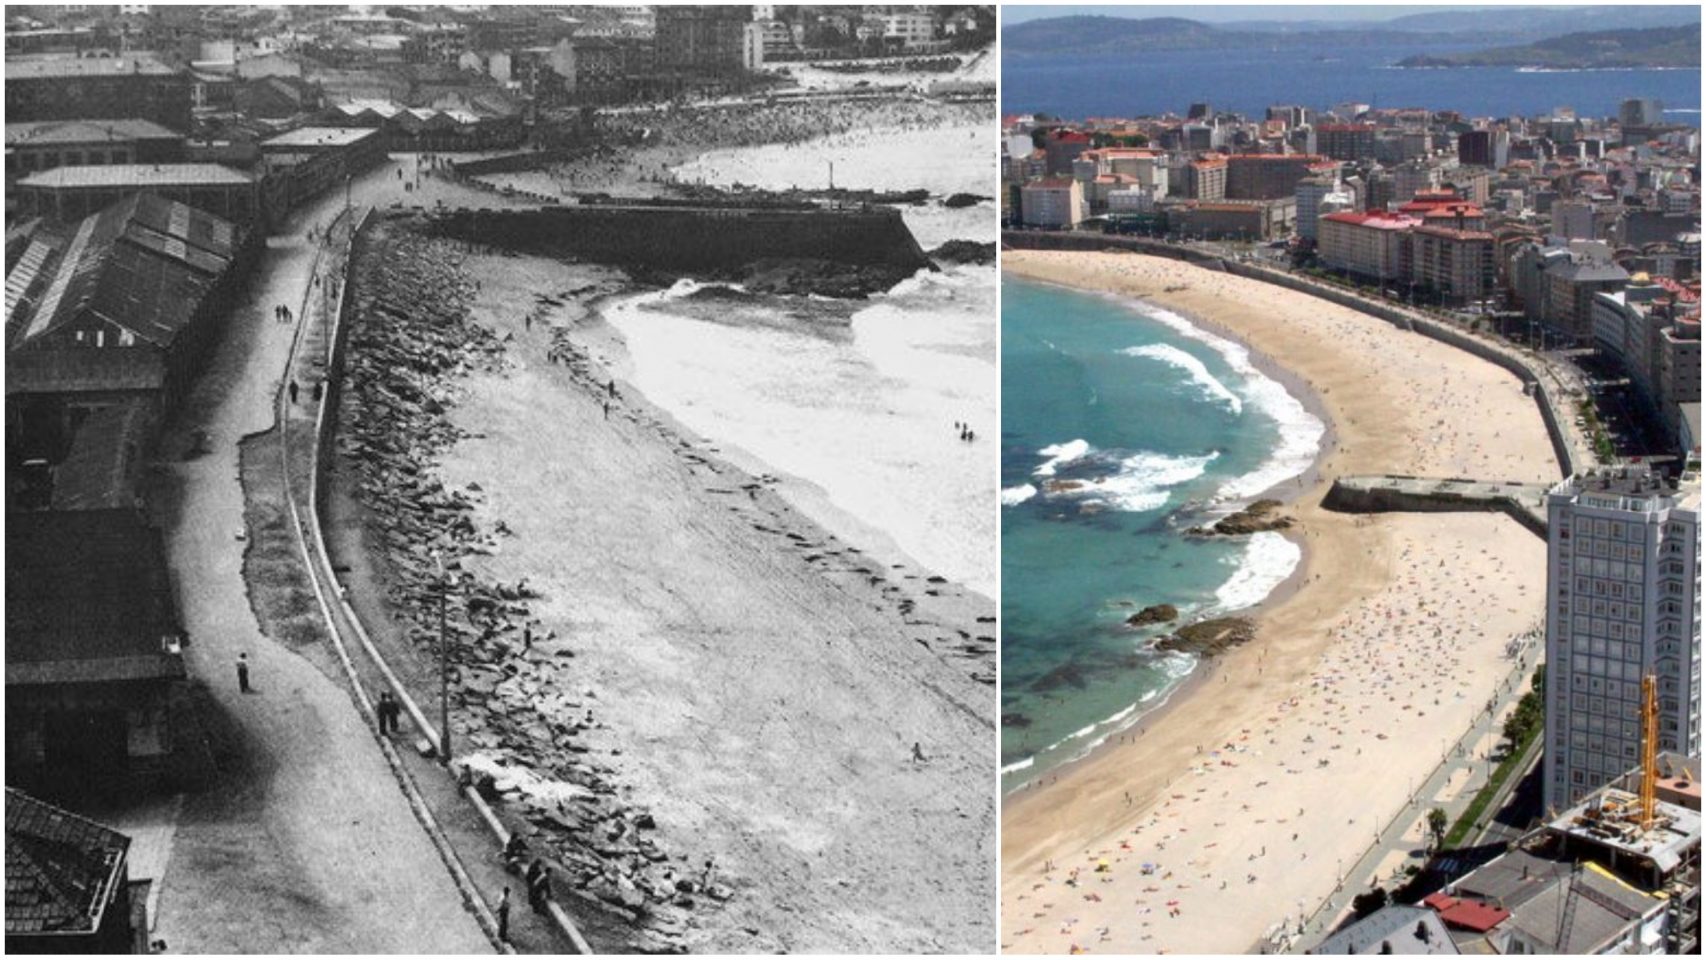 La ensenada de A Coruña estaba llena de industrias a pie de playa que han dejado paso a la ciudad